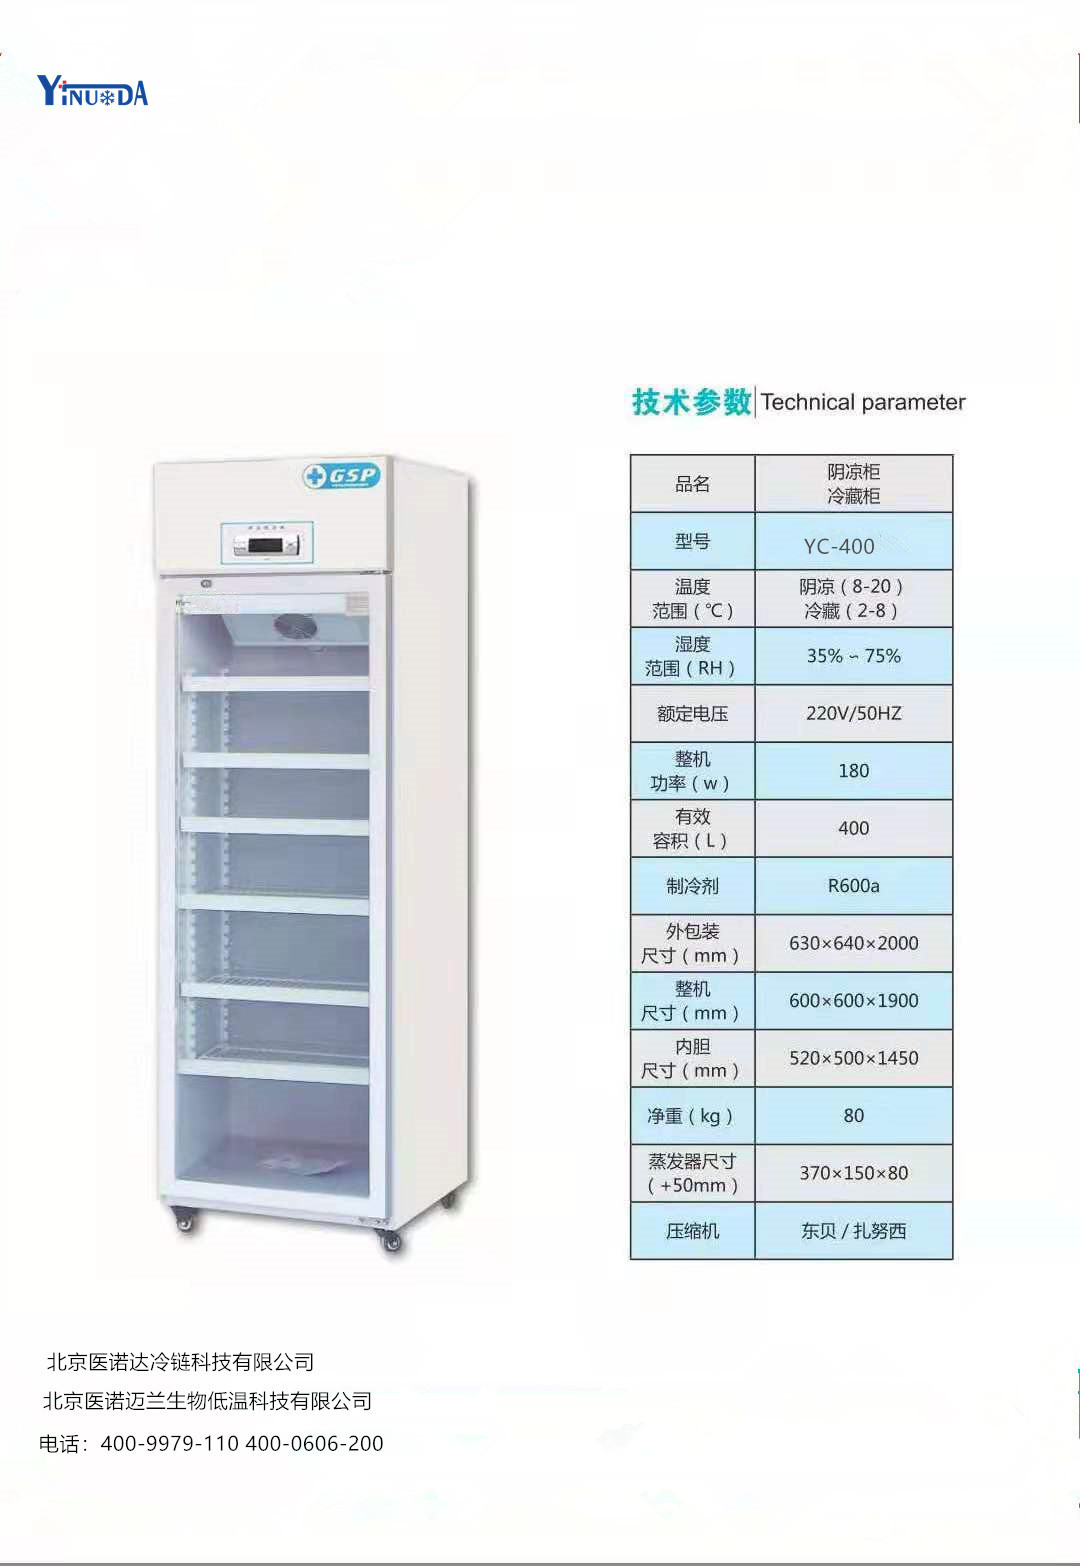 医用冷藏箱生产厂家医诺达型号YC-400